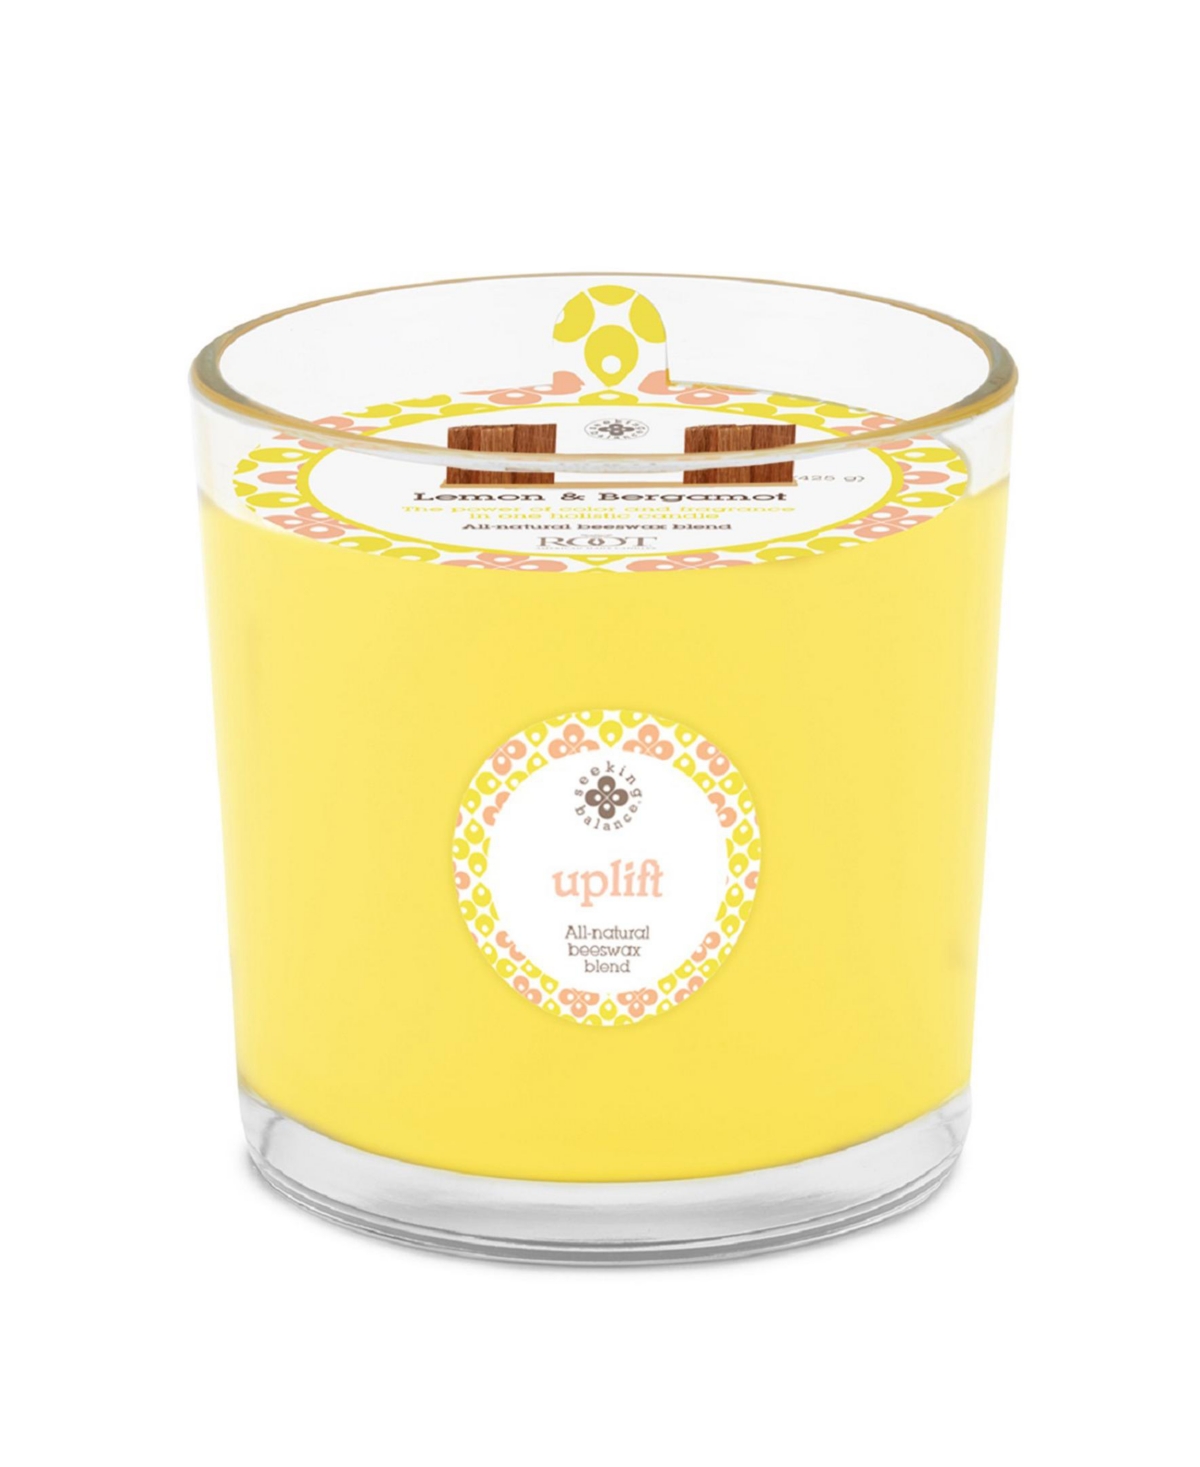 Seeking Balance 2 Wick Uplift Lemon Bergamot Spa Jar Candle, 12 oz - Yellow